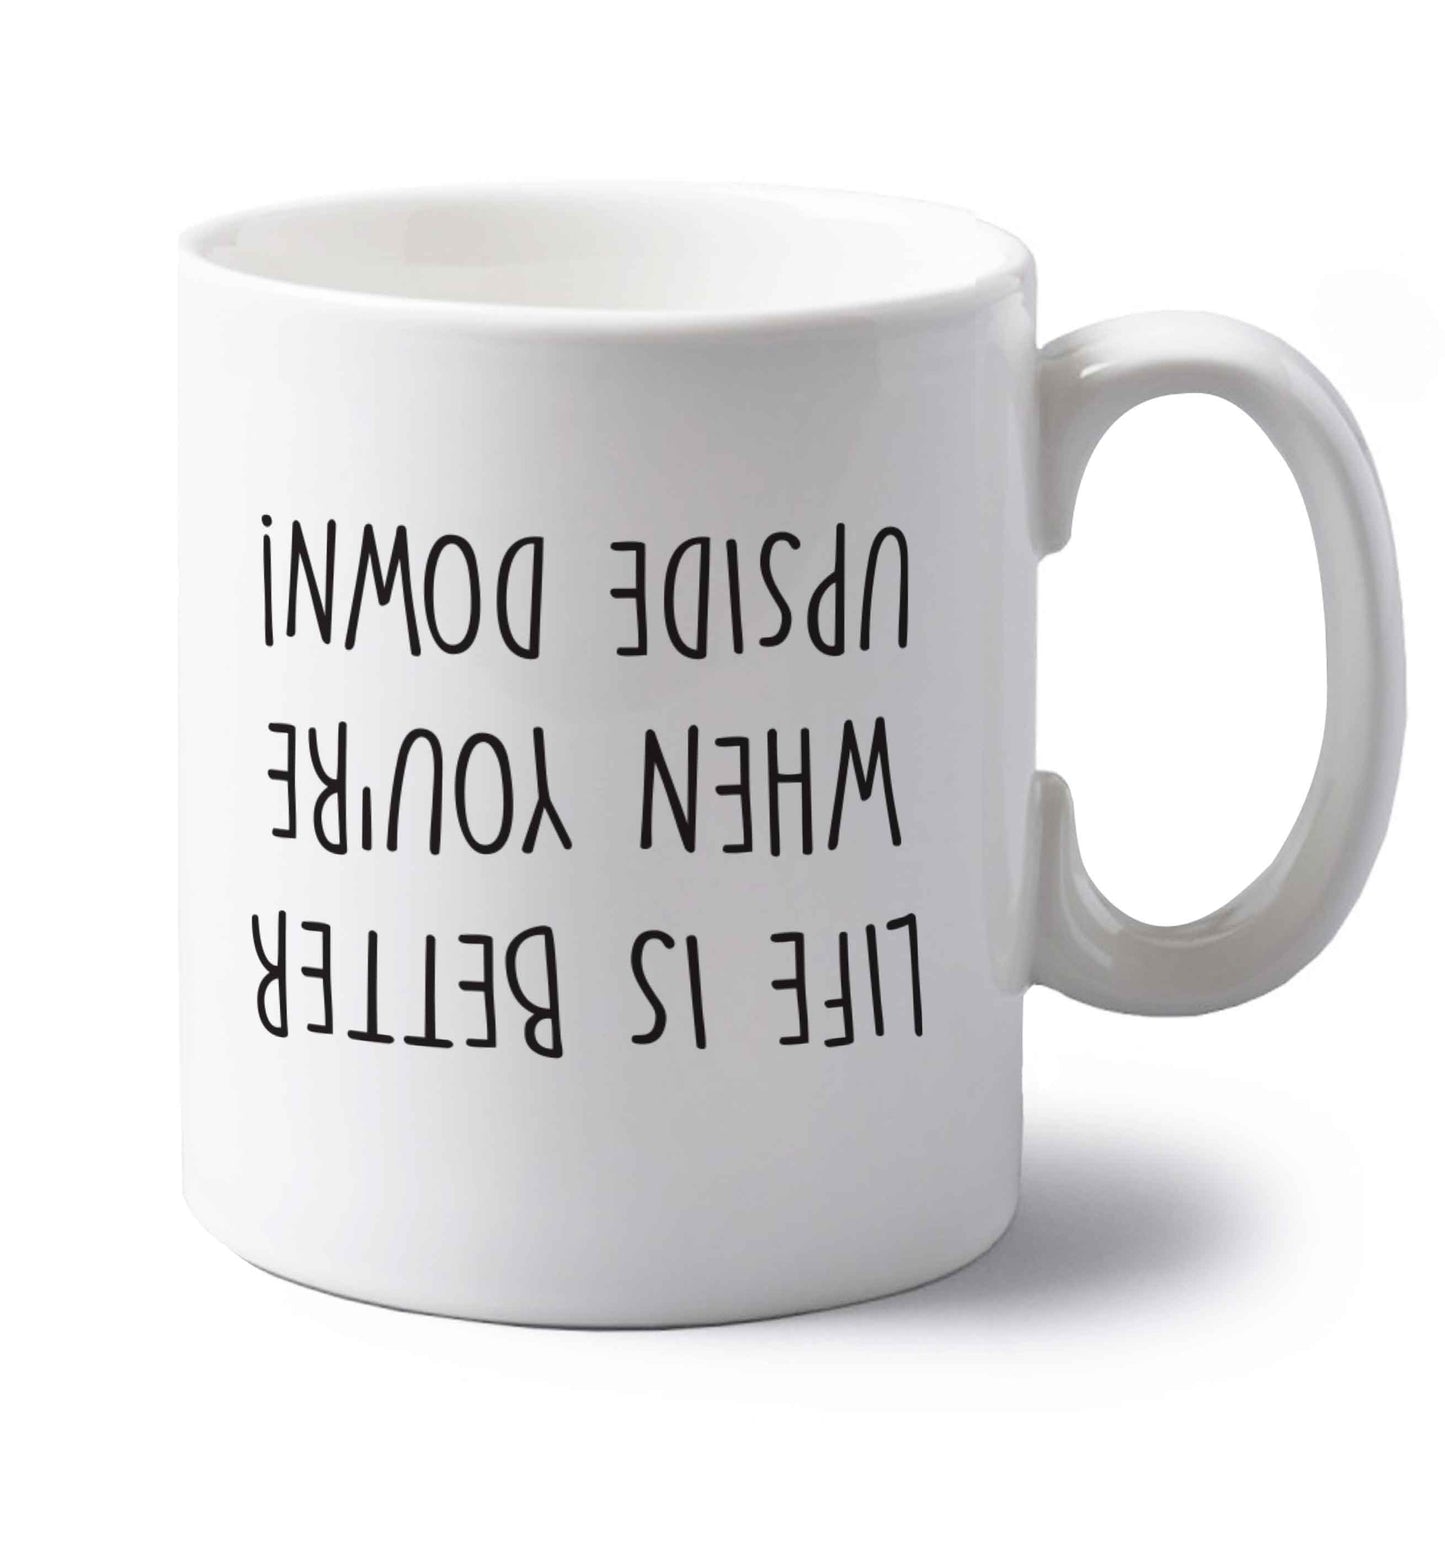 Life is better upside down left handed white ceramic mug 